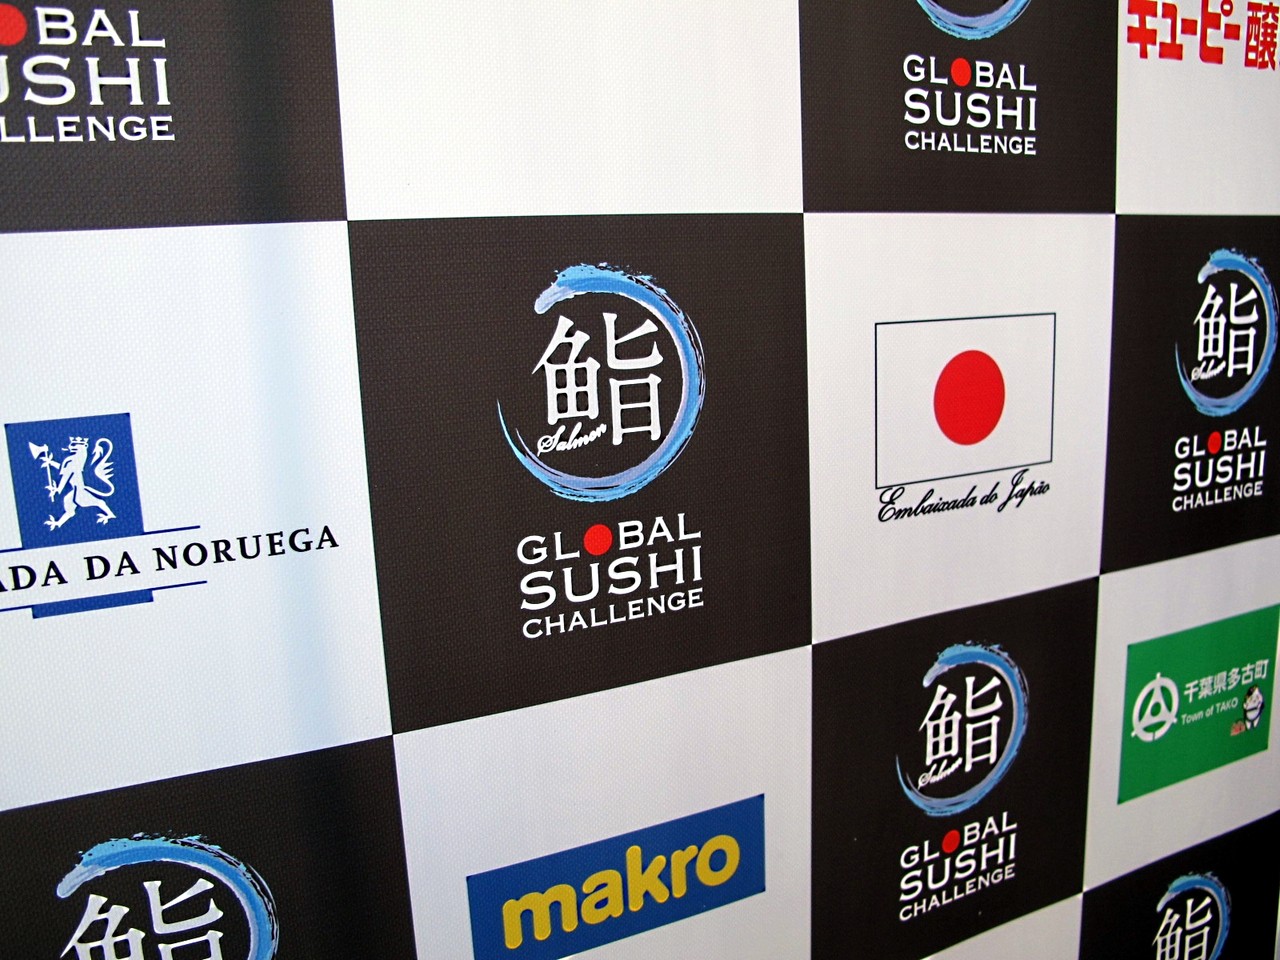 Global Sushi Challenge